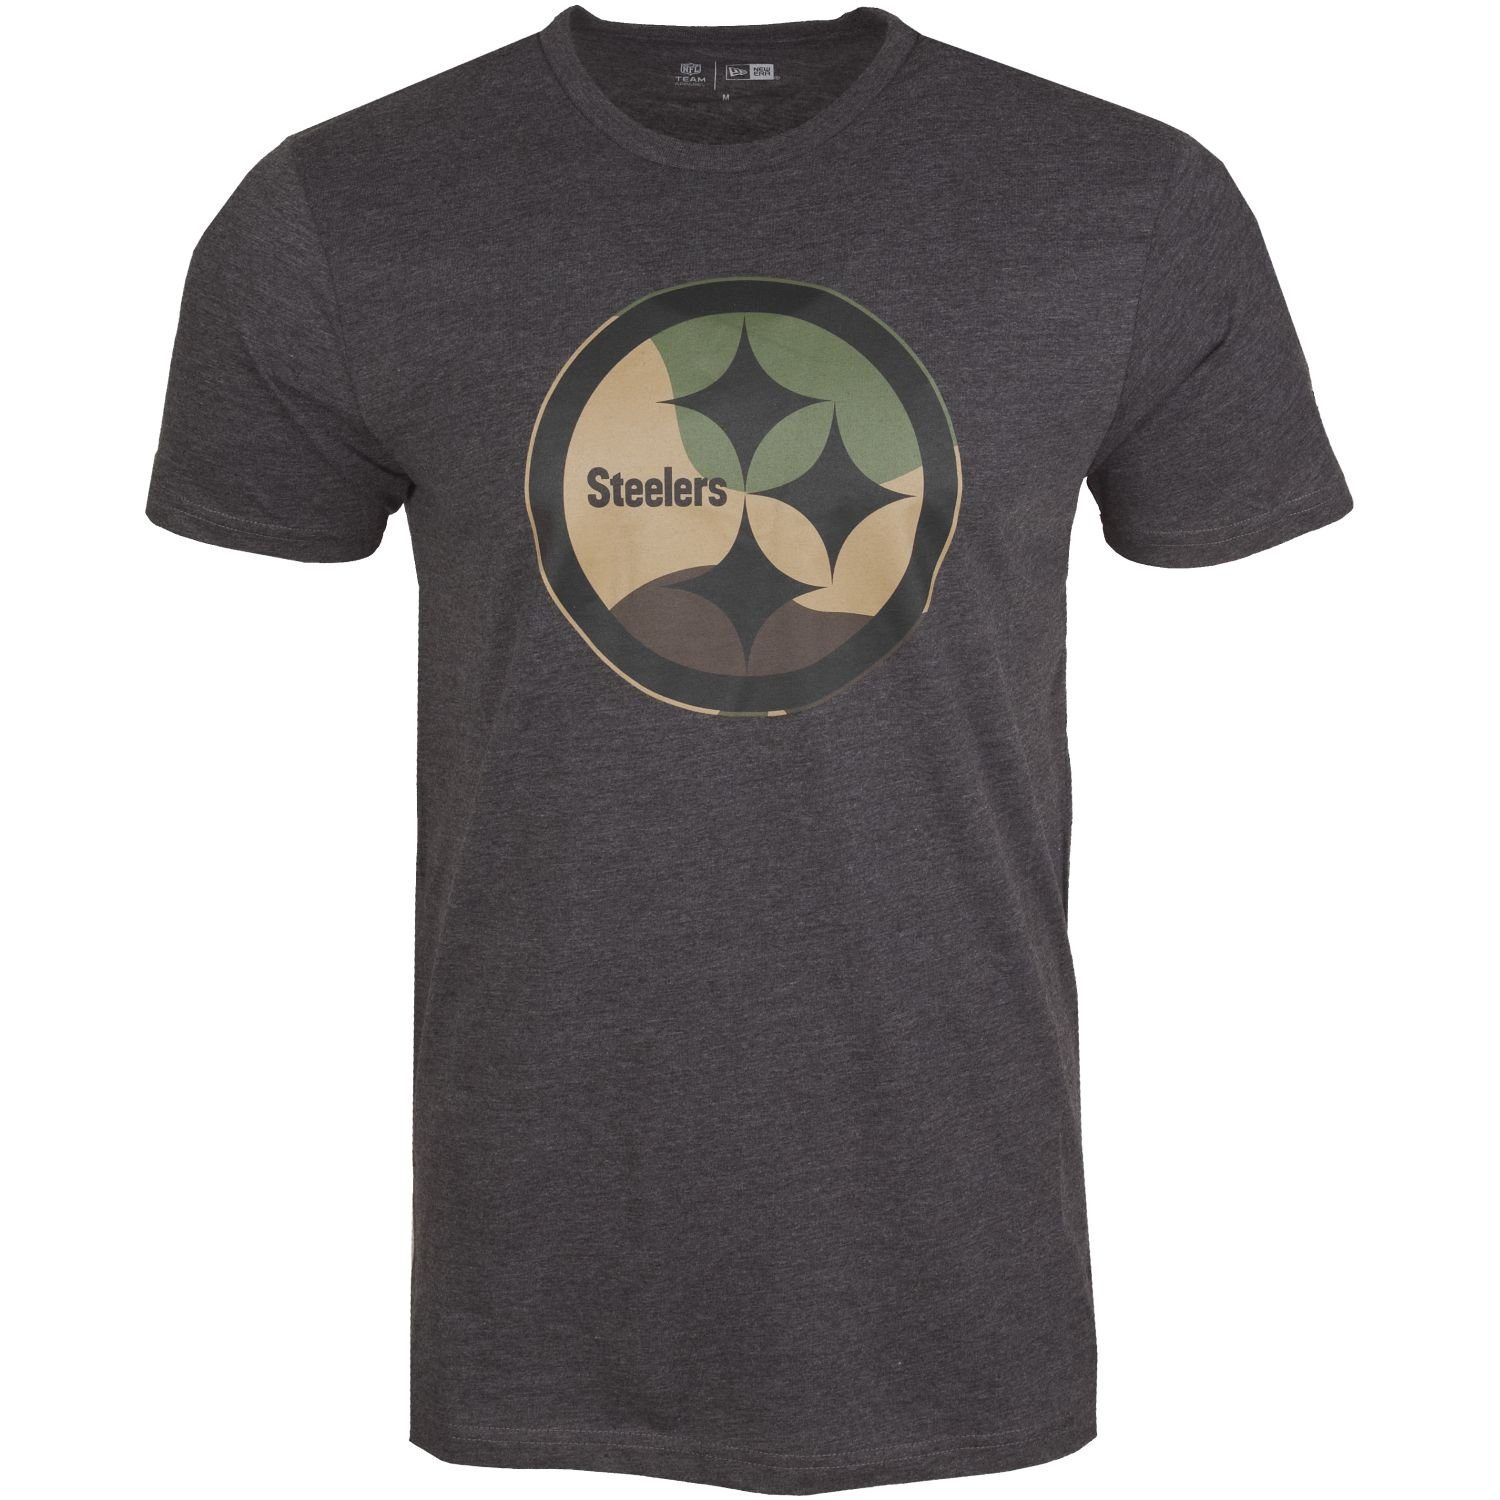 New Era Print-Shirt charcoal Steelers Pittsburgh NFL Logo Team